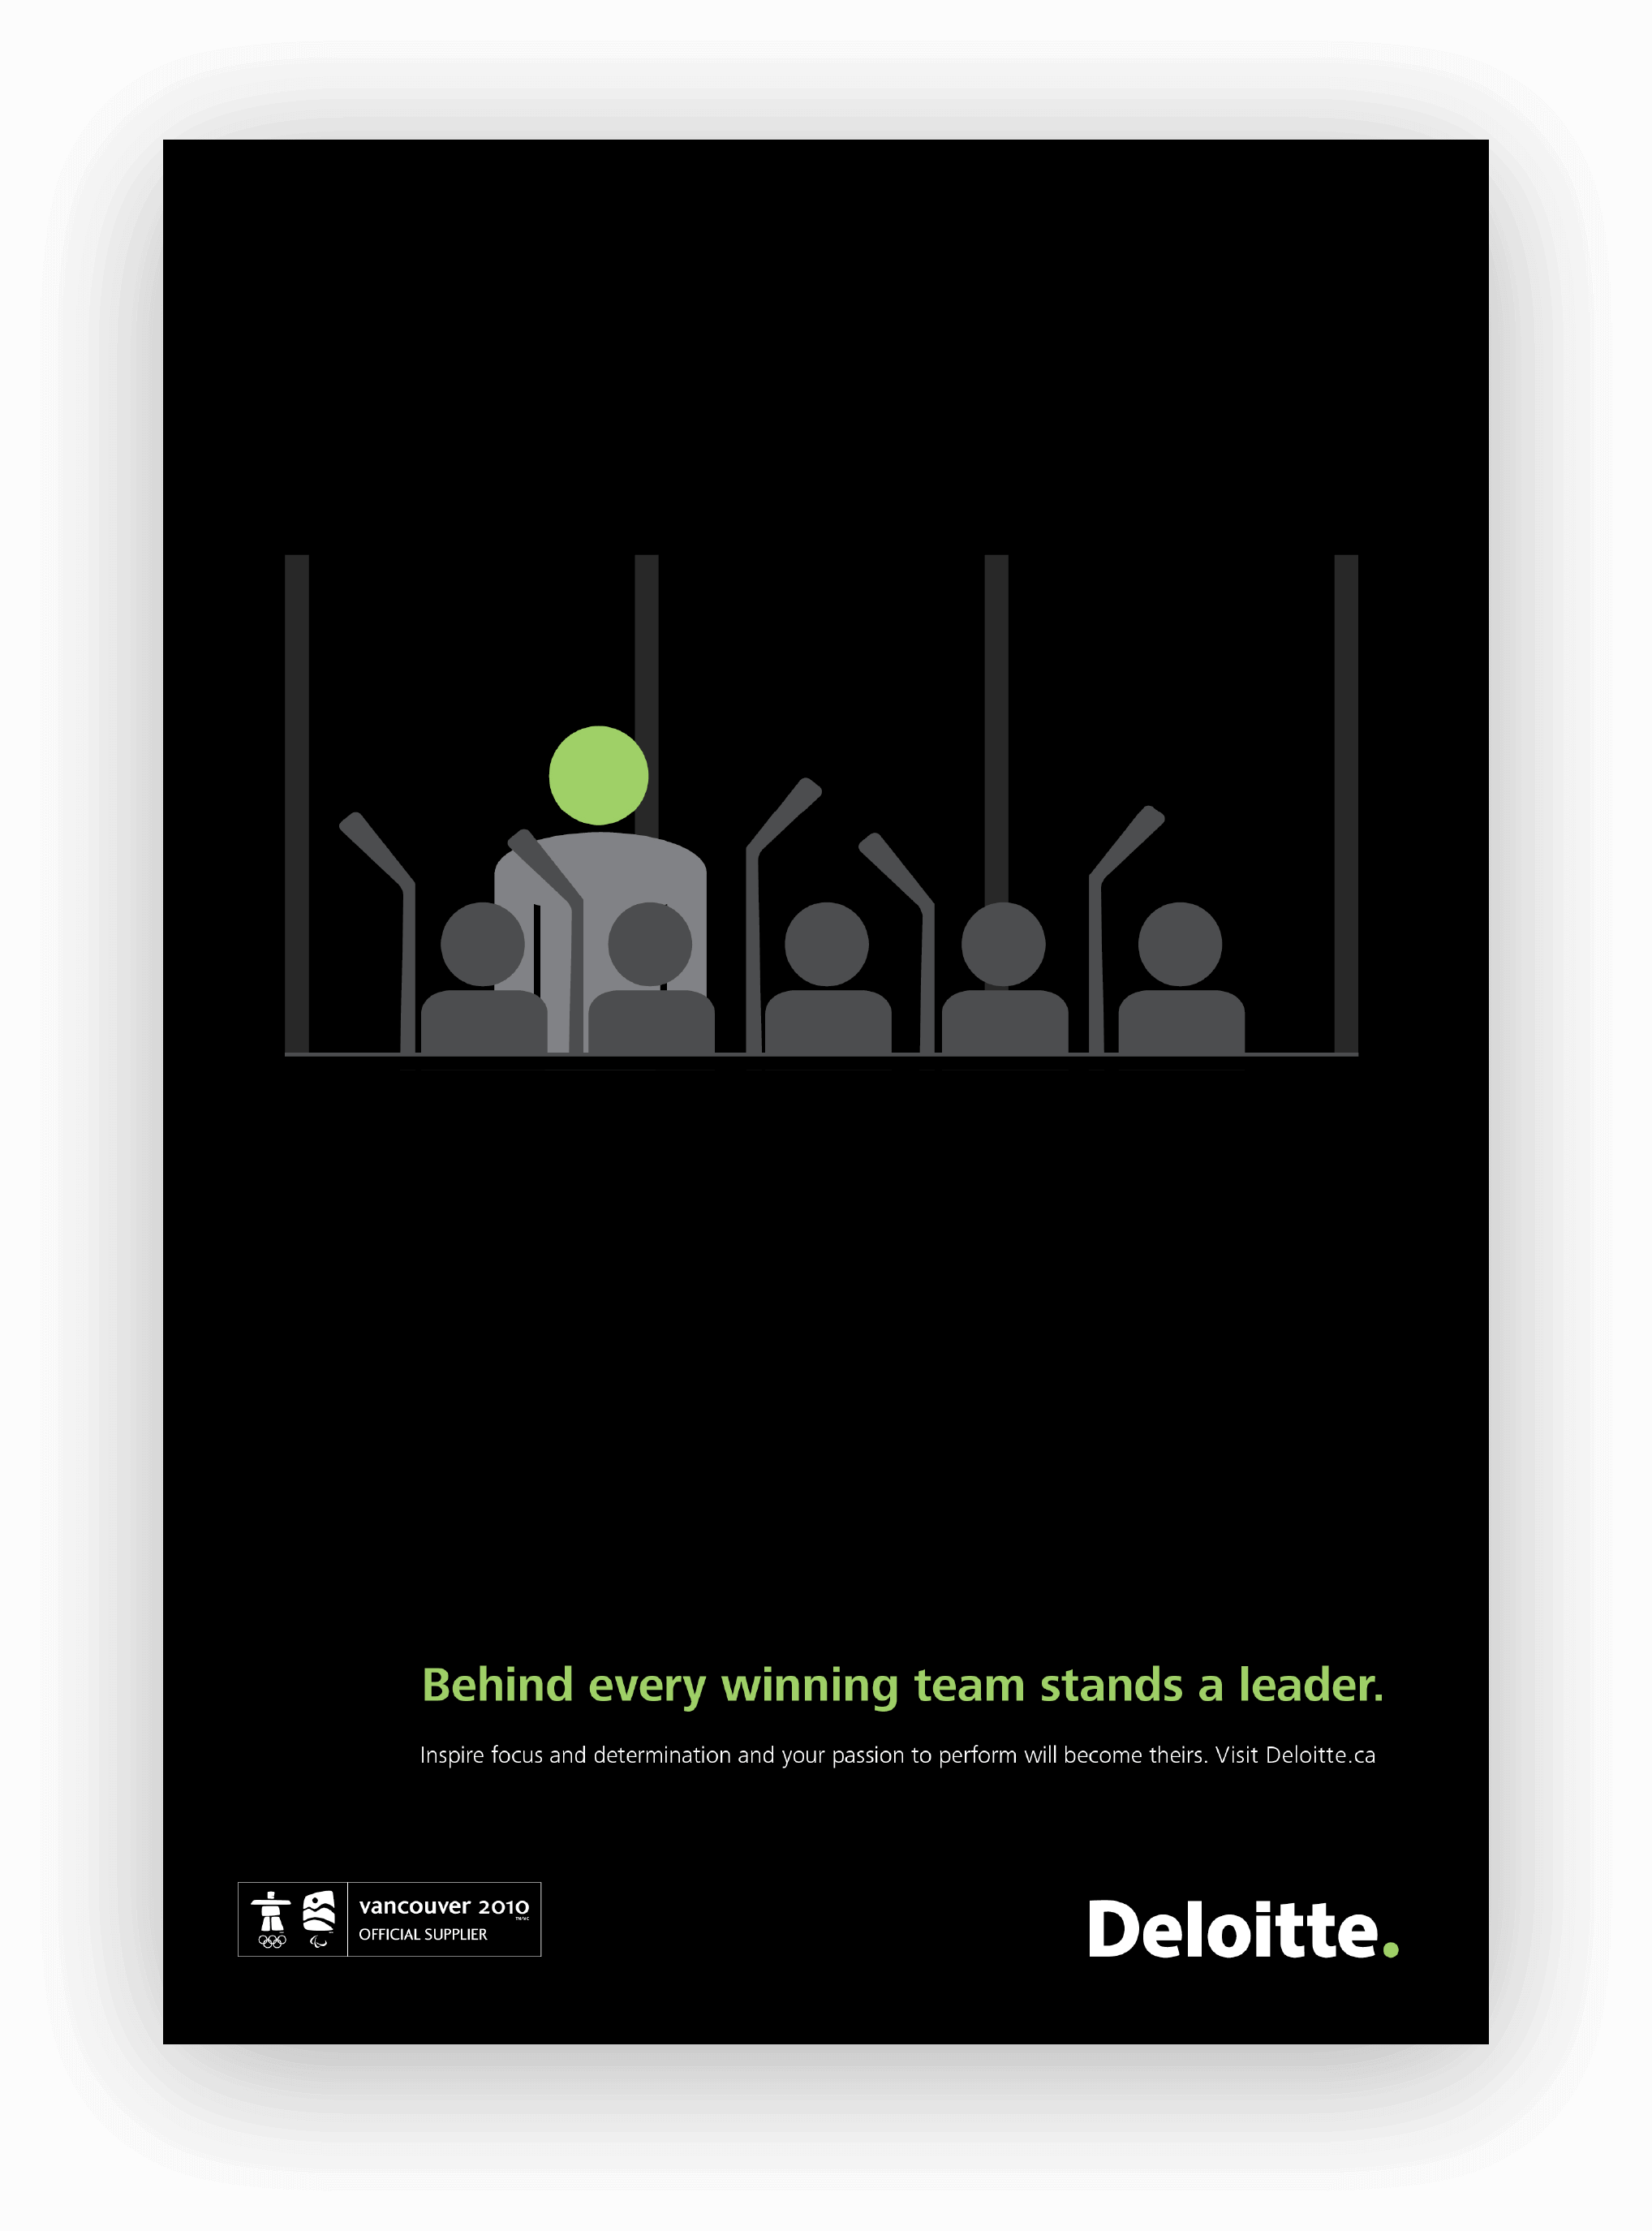 Deloitte Olympics - Yield Branding - Side Image 2